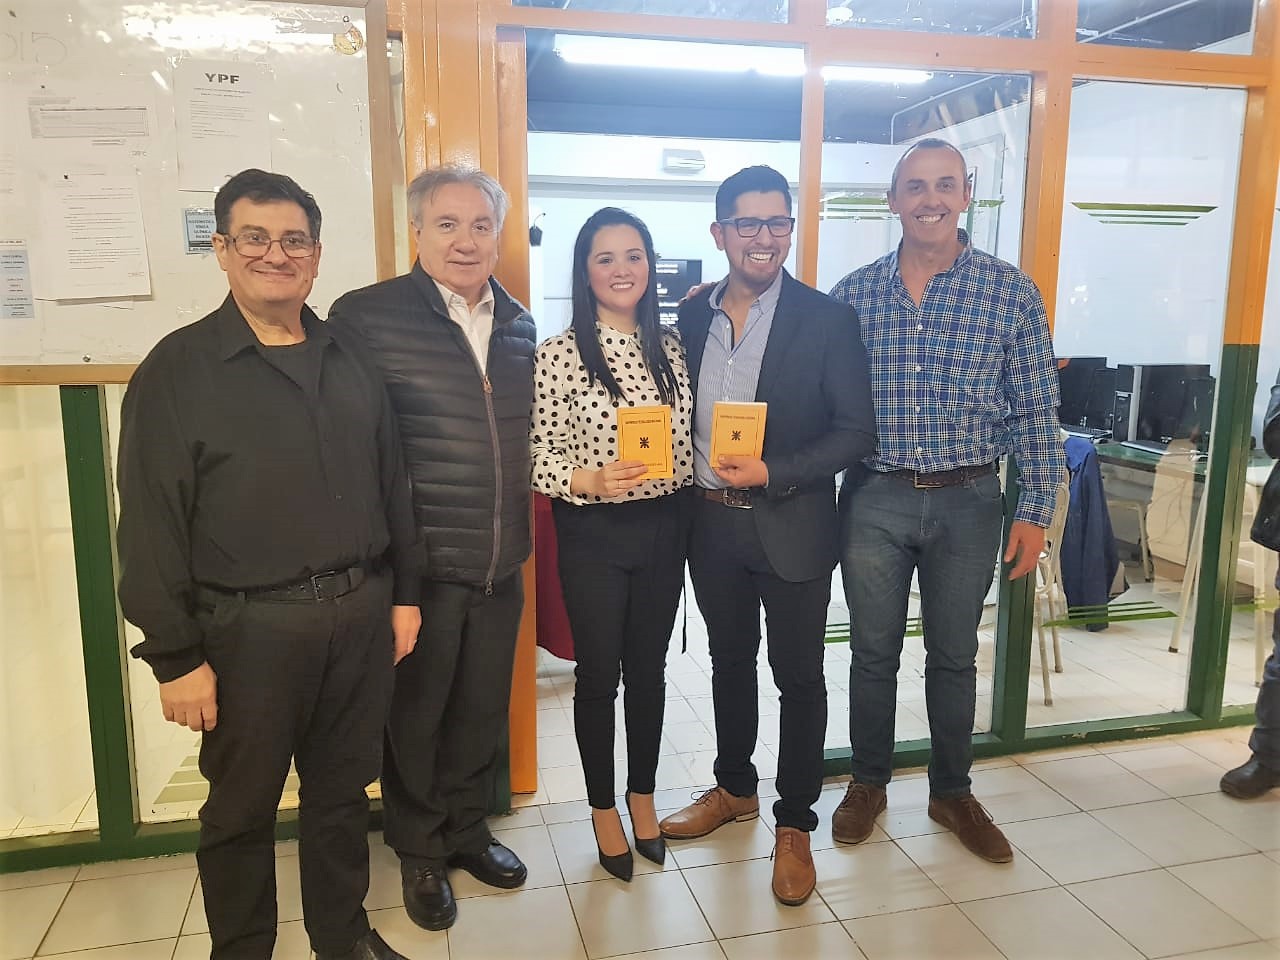 Los nuevos profesionales son los Ingenieros Industriales Pablo Mena Chiguay y Antonela Ailen Andrade Mascareña quienes presentaron y defendieron su proyecto de “Producción de Filete y harina de pescado”.